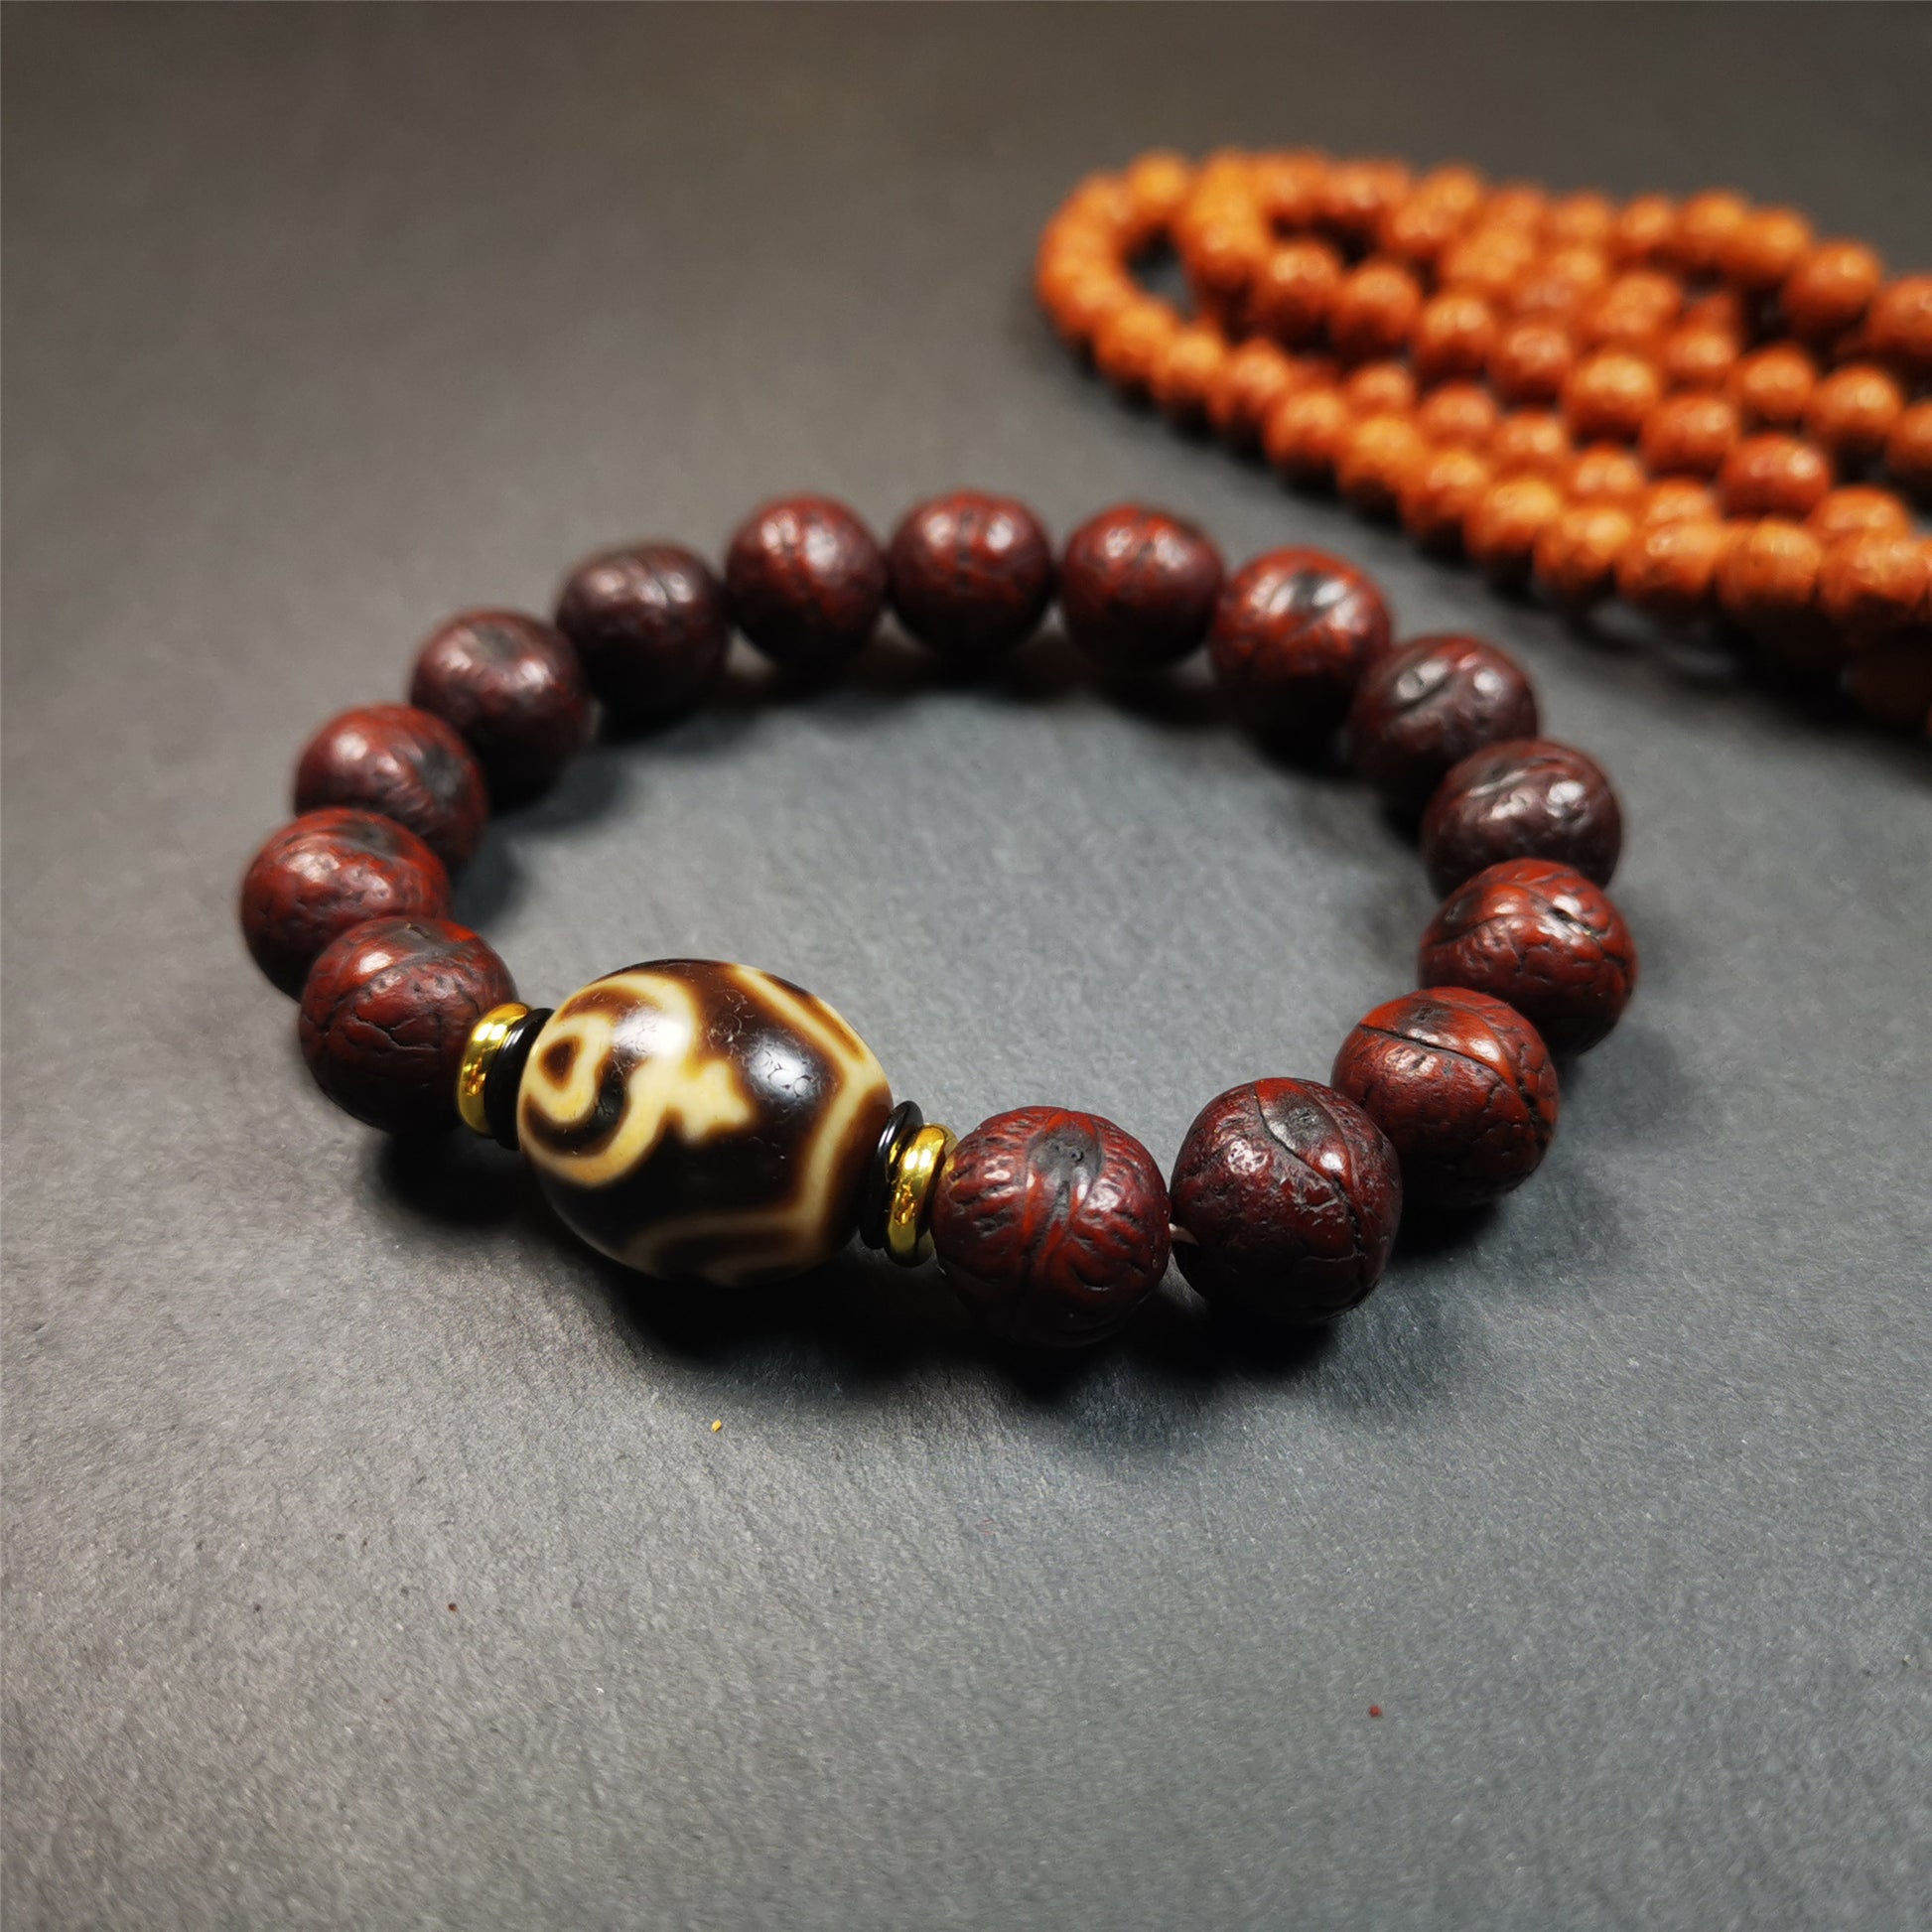 Bodhi Seed Meditation Bead Bracelet - Red String